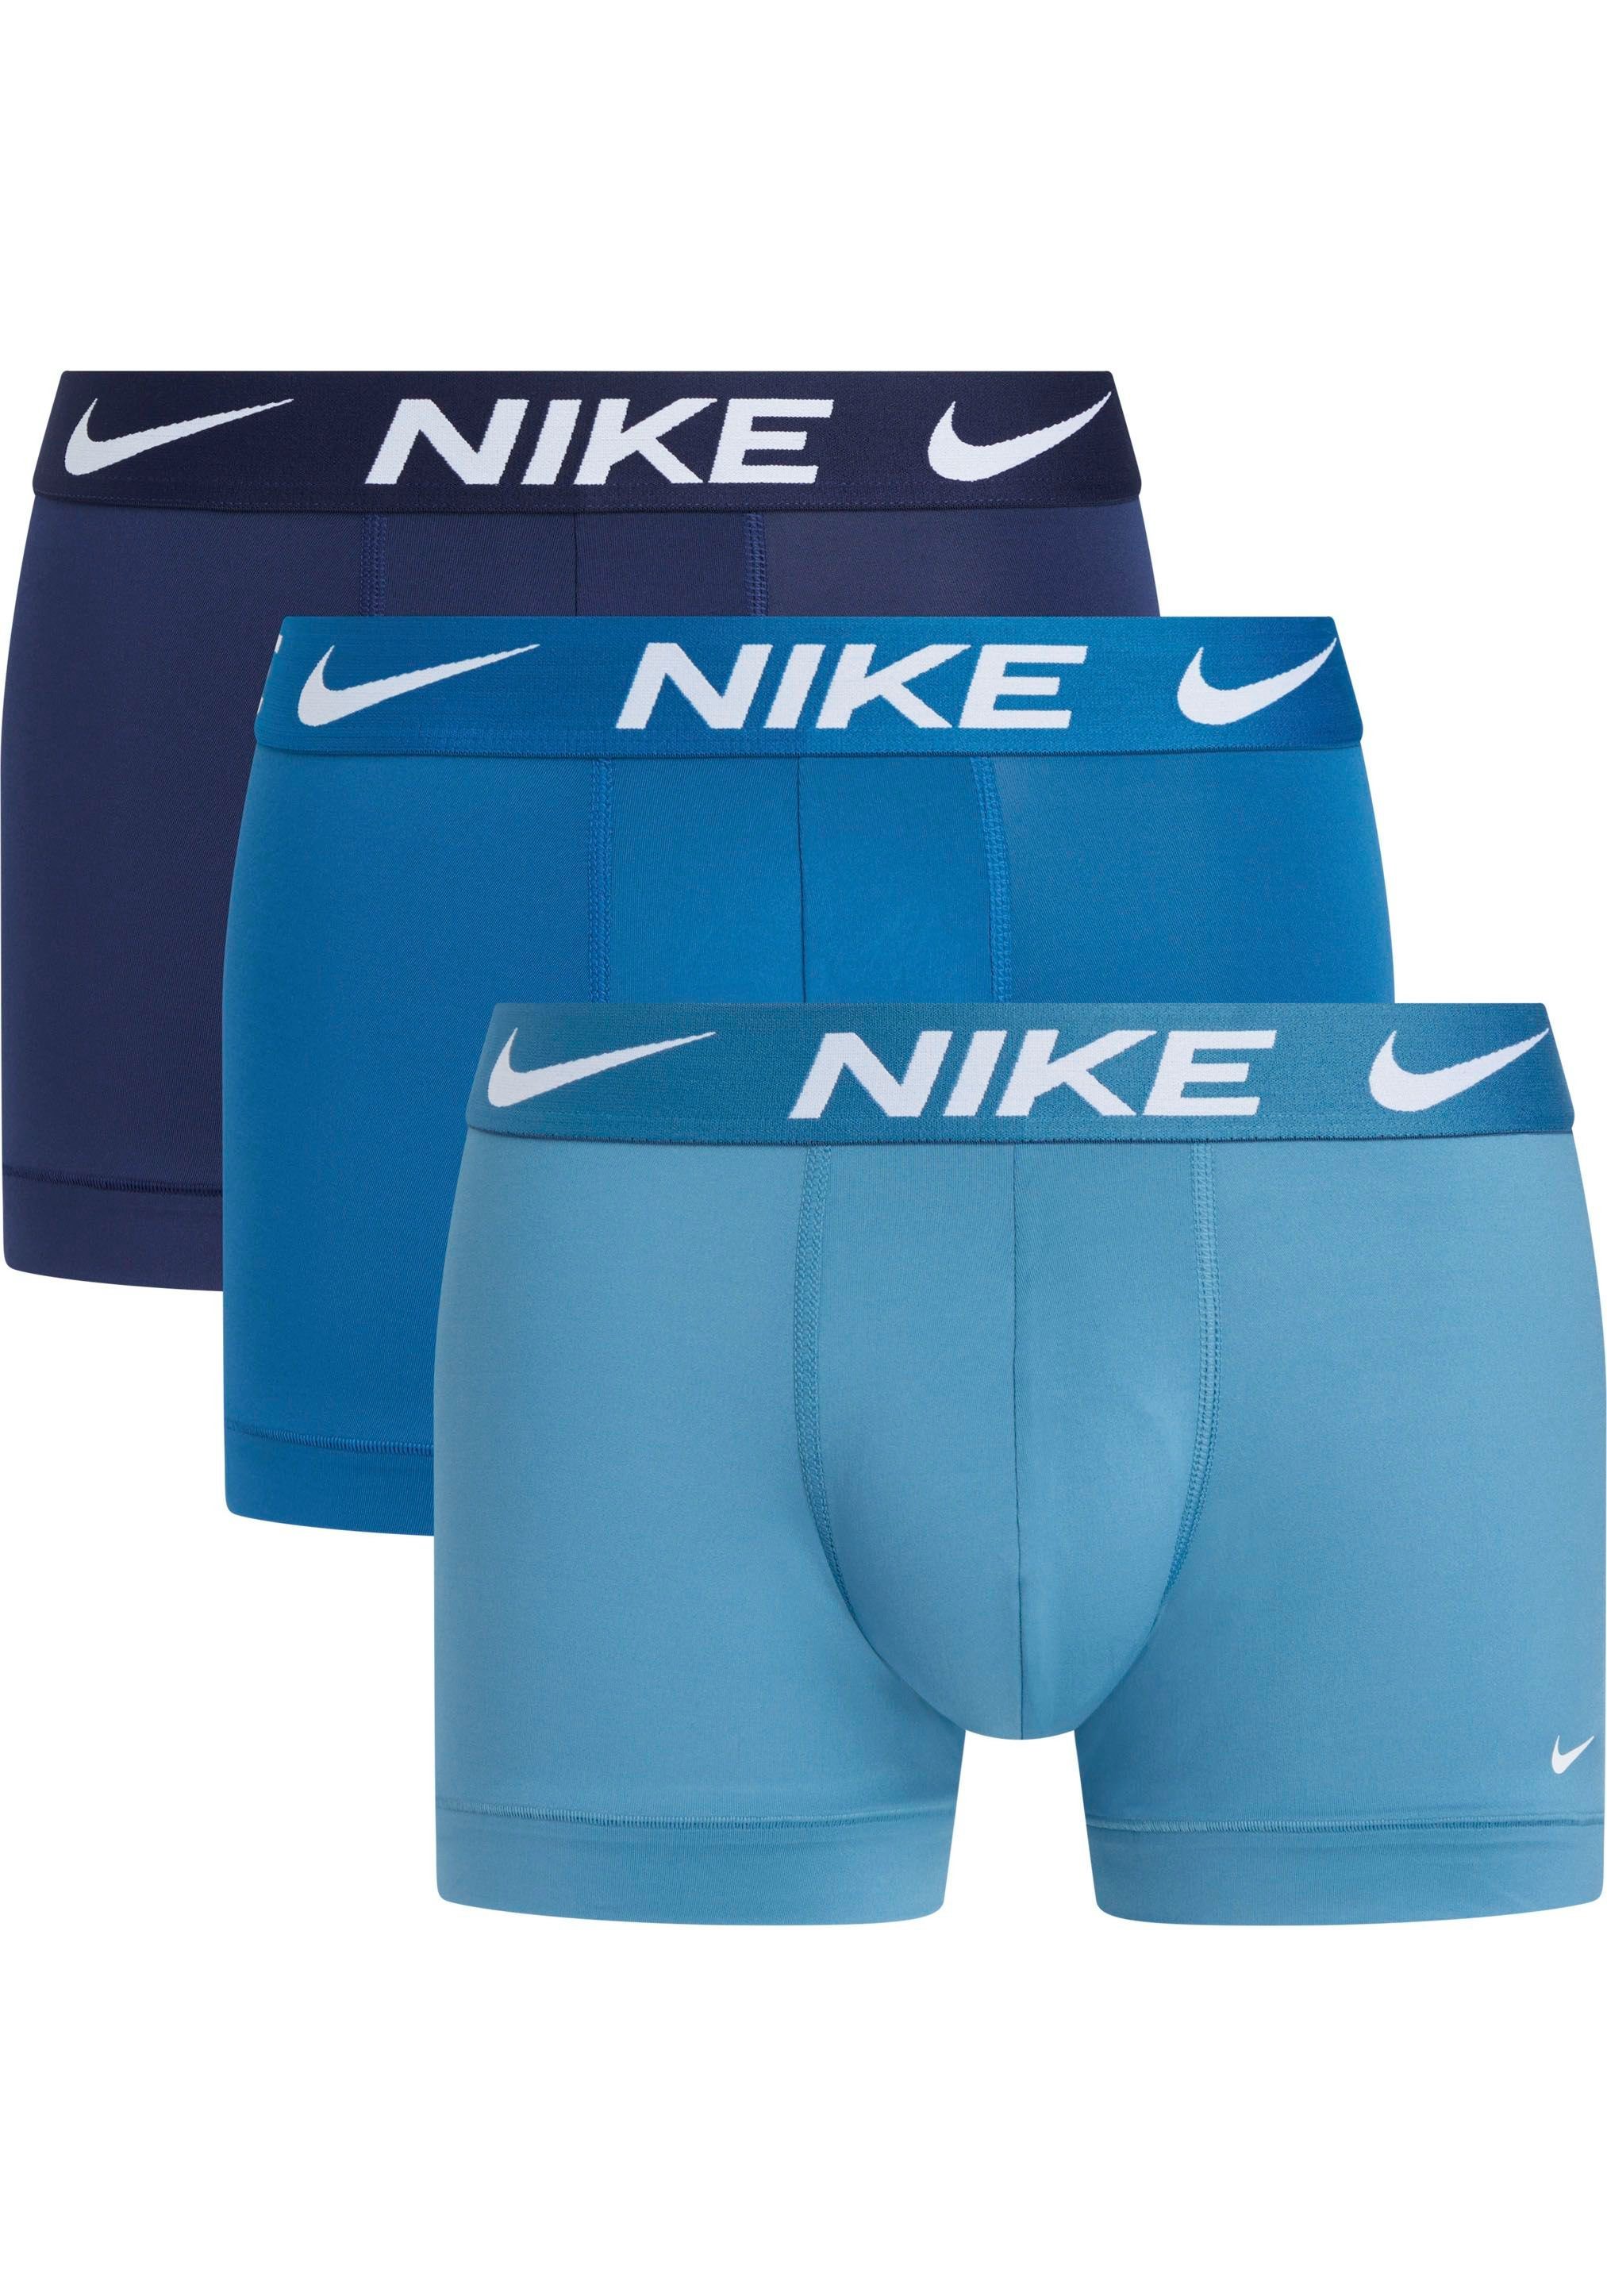 Vorbildlich NIKE Underwear Trunk Logo-Elastikbund Stück) 3PK NOISE_AQUA/INDSTRIAL_BL/MDNGHT_BLUE mit (3 NIKE (Packung, 3er-Pack) TRUNK